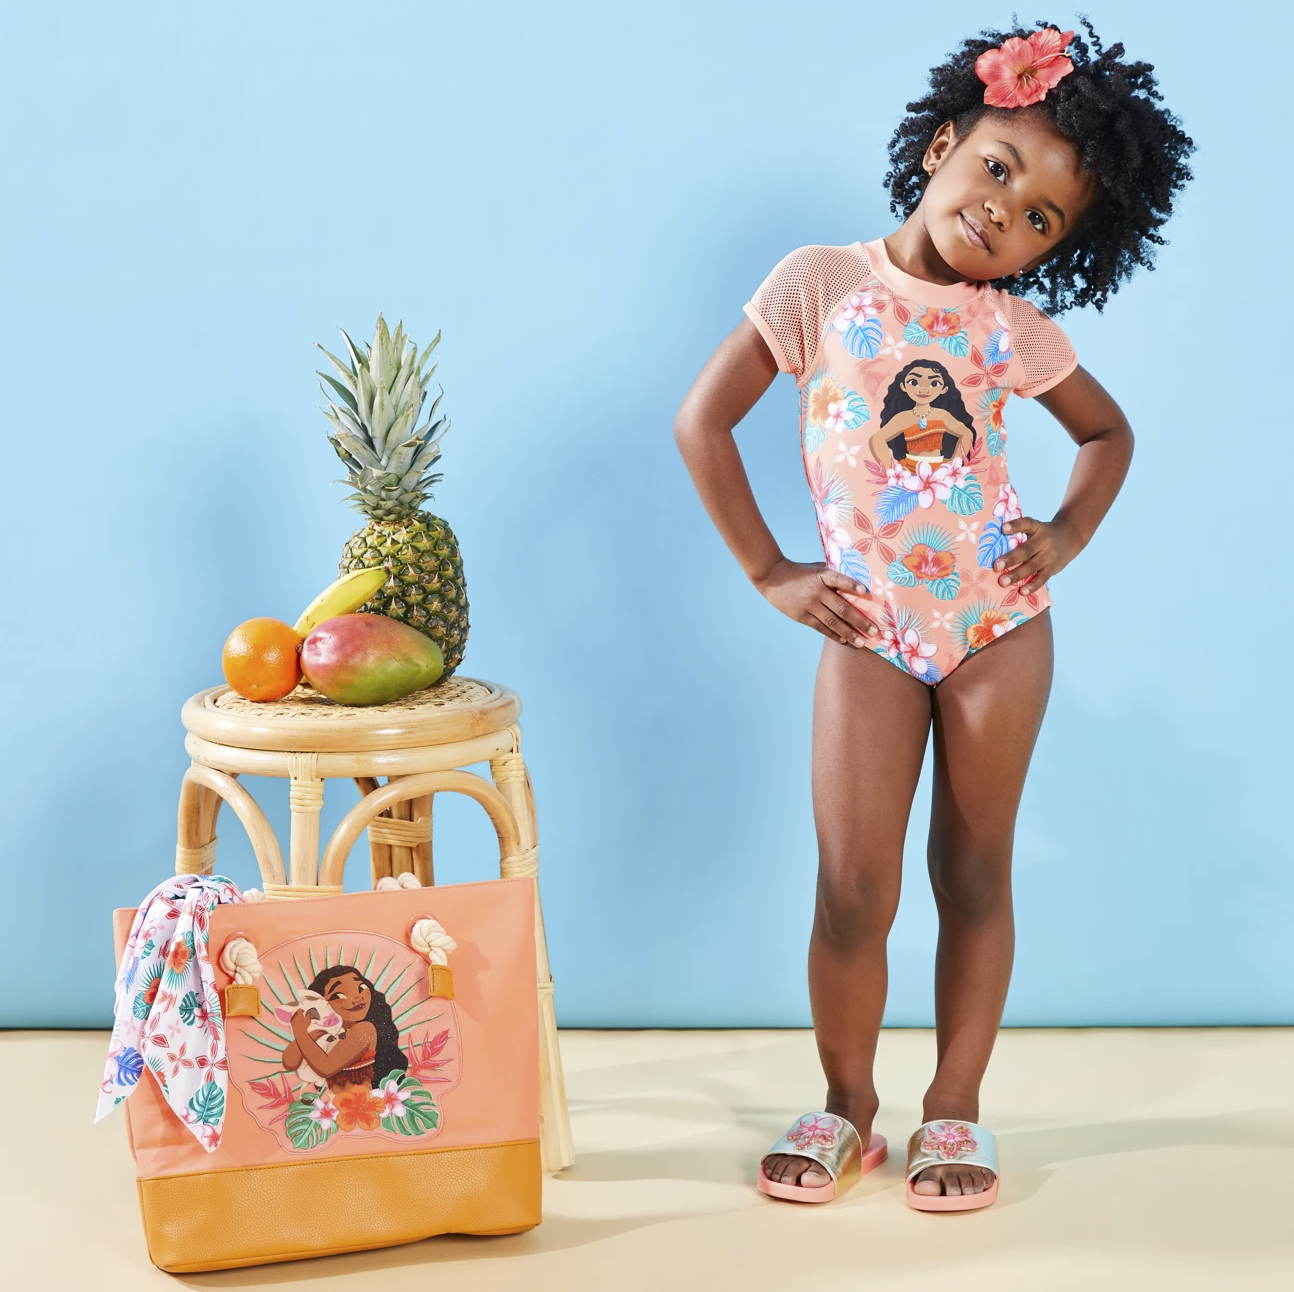 一个穿着泳衣的孩子站在莫阿纳大手提袋旁边，它的图案和毛巾一样，顶部是粉红色的帆布，底部是棕色的皮革